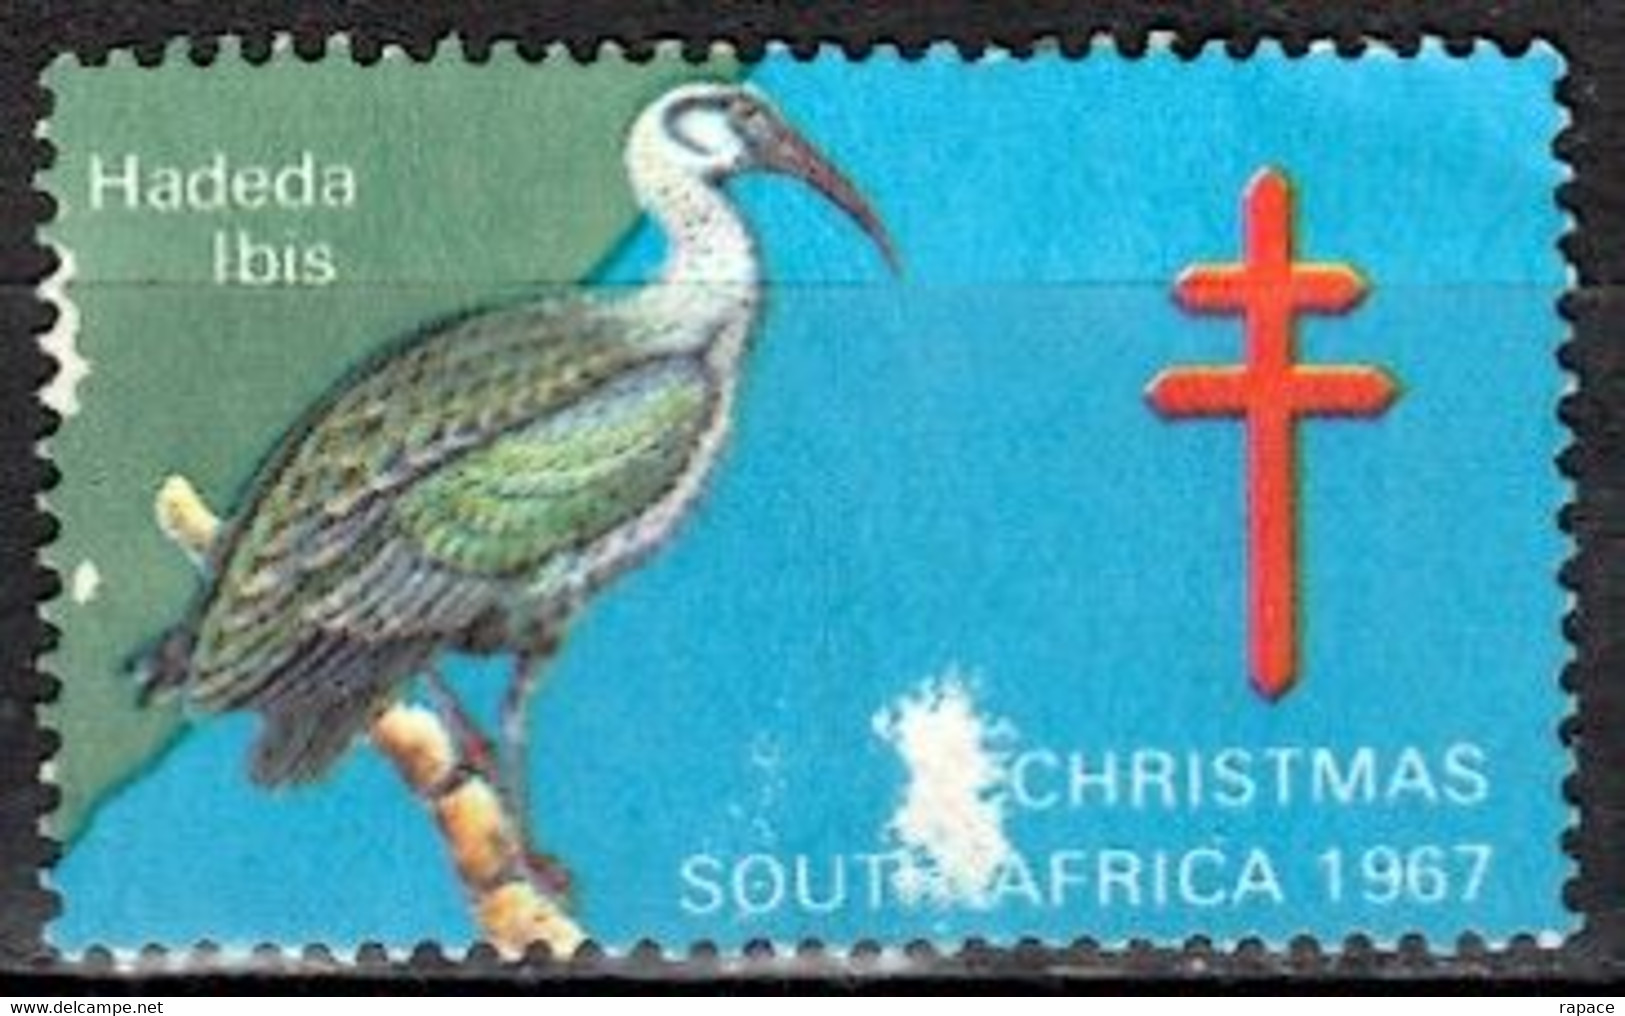 Afrique Du Sud 1967 Timbre De Bienfaisance - Ibis Hagedash (Bostrychia Hagedash) - Pélicans